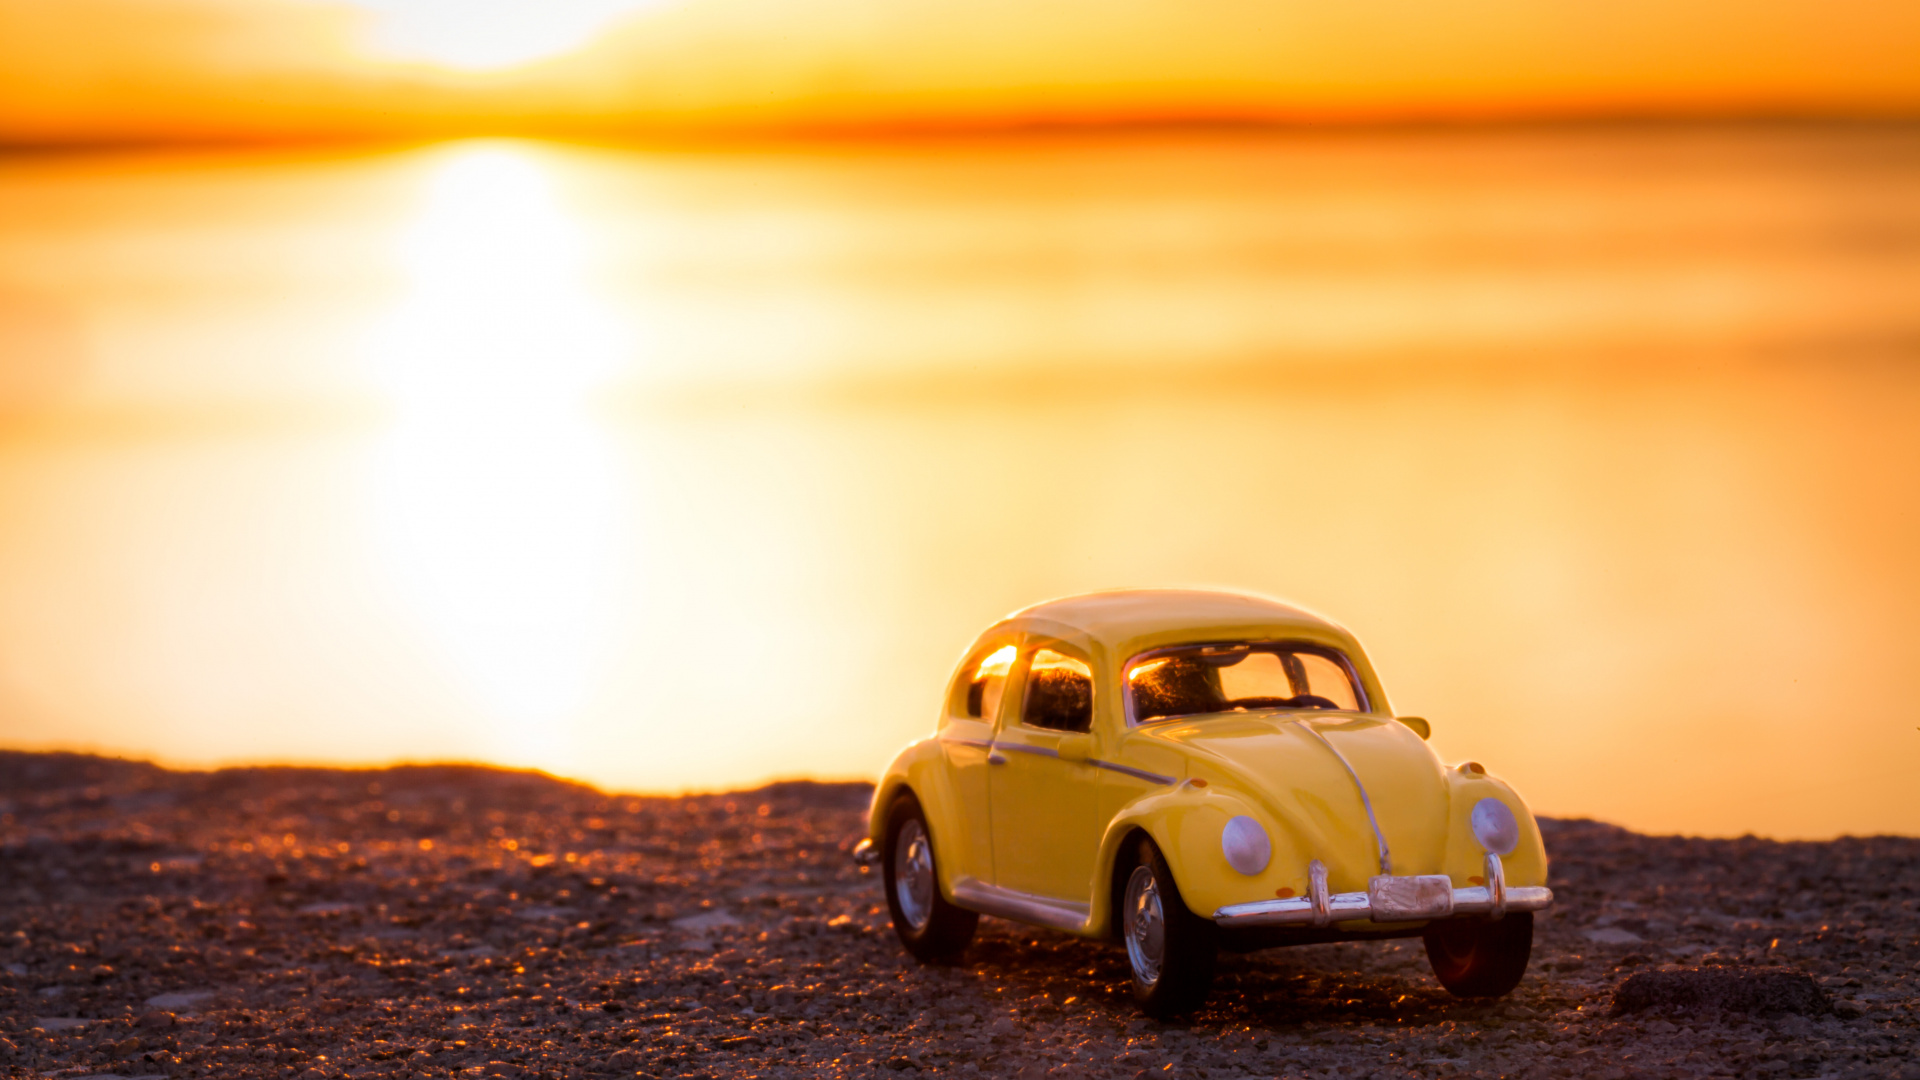 Volkswagen Beetle Amarillo en la Orilla Durante la Puesta de Sol. Wallpaper in 1920x1080 Resolution